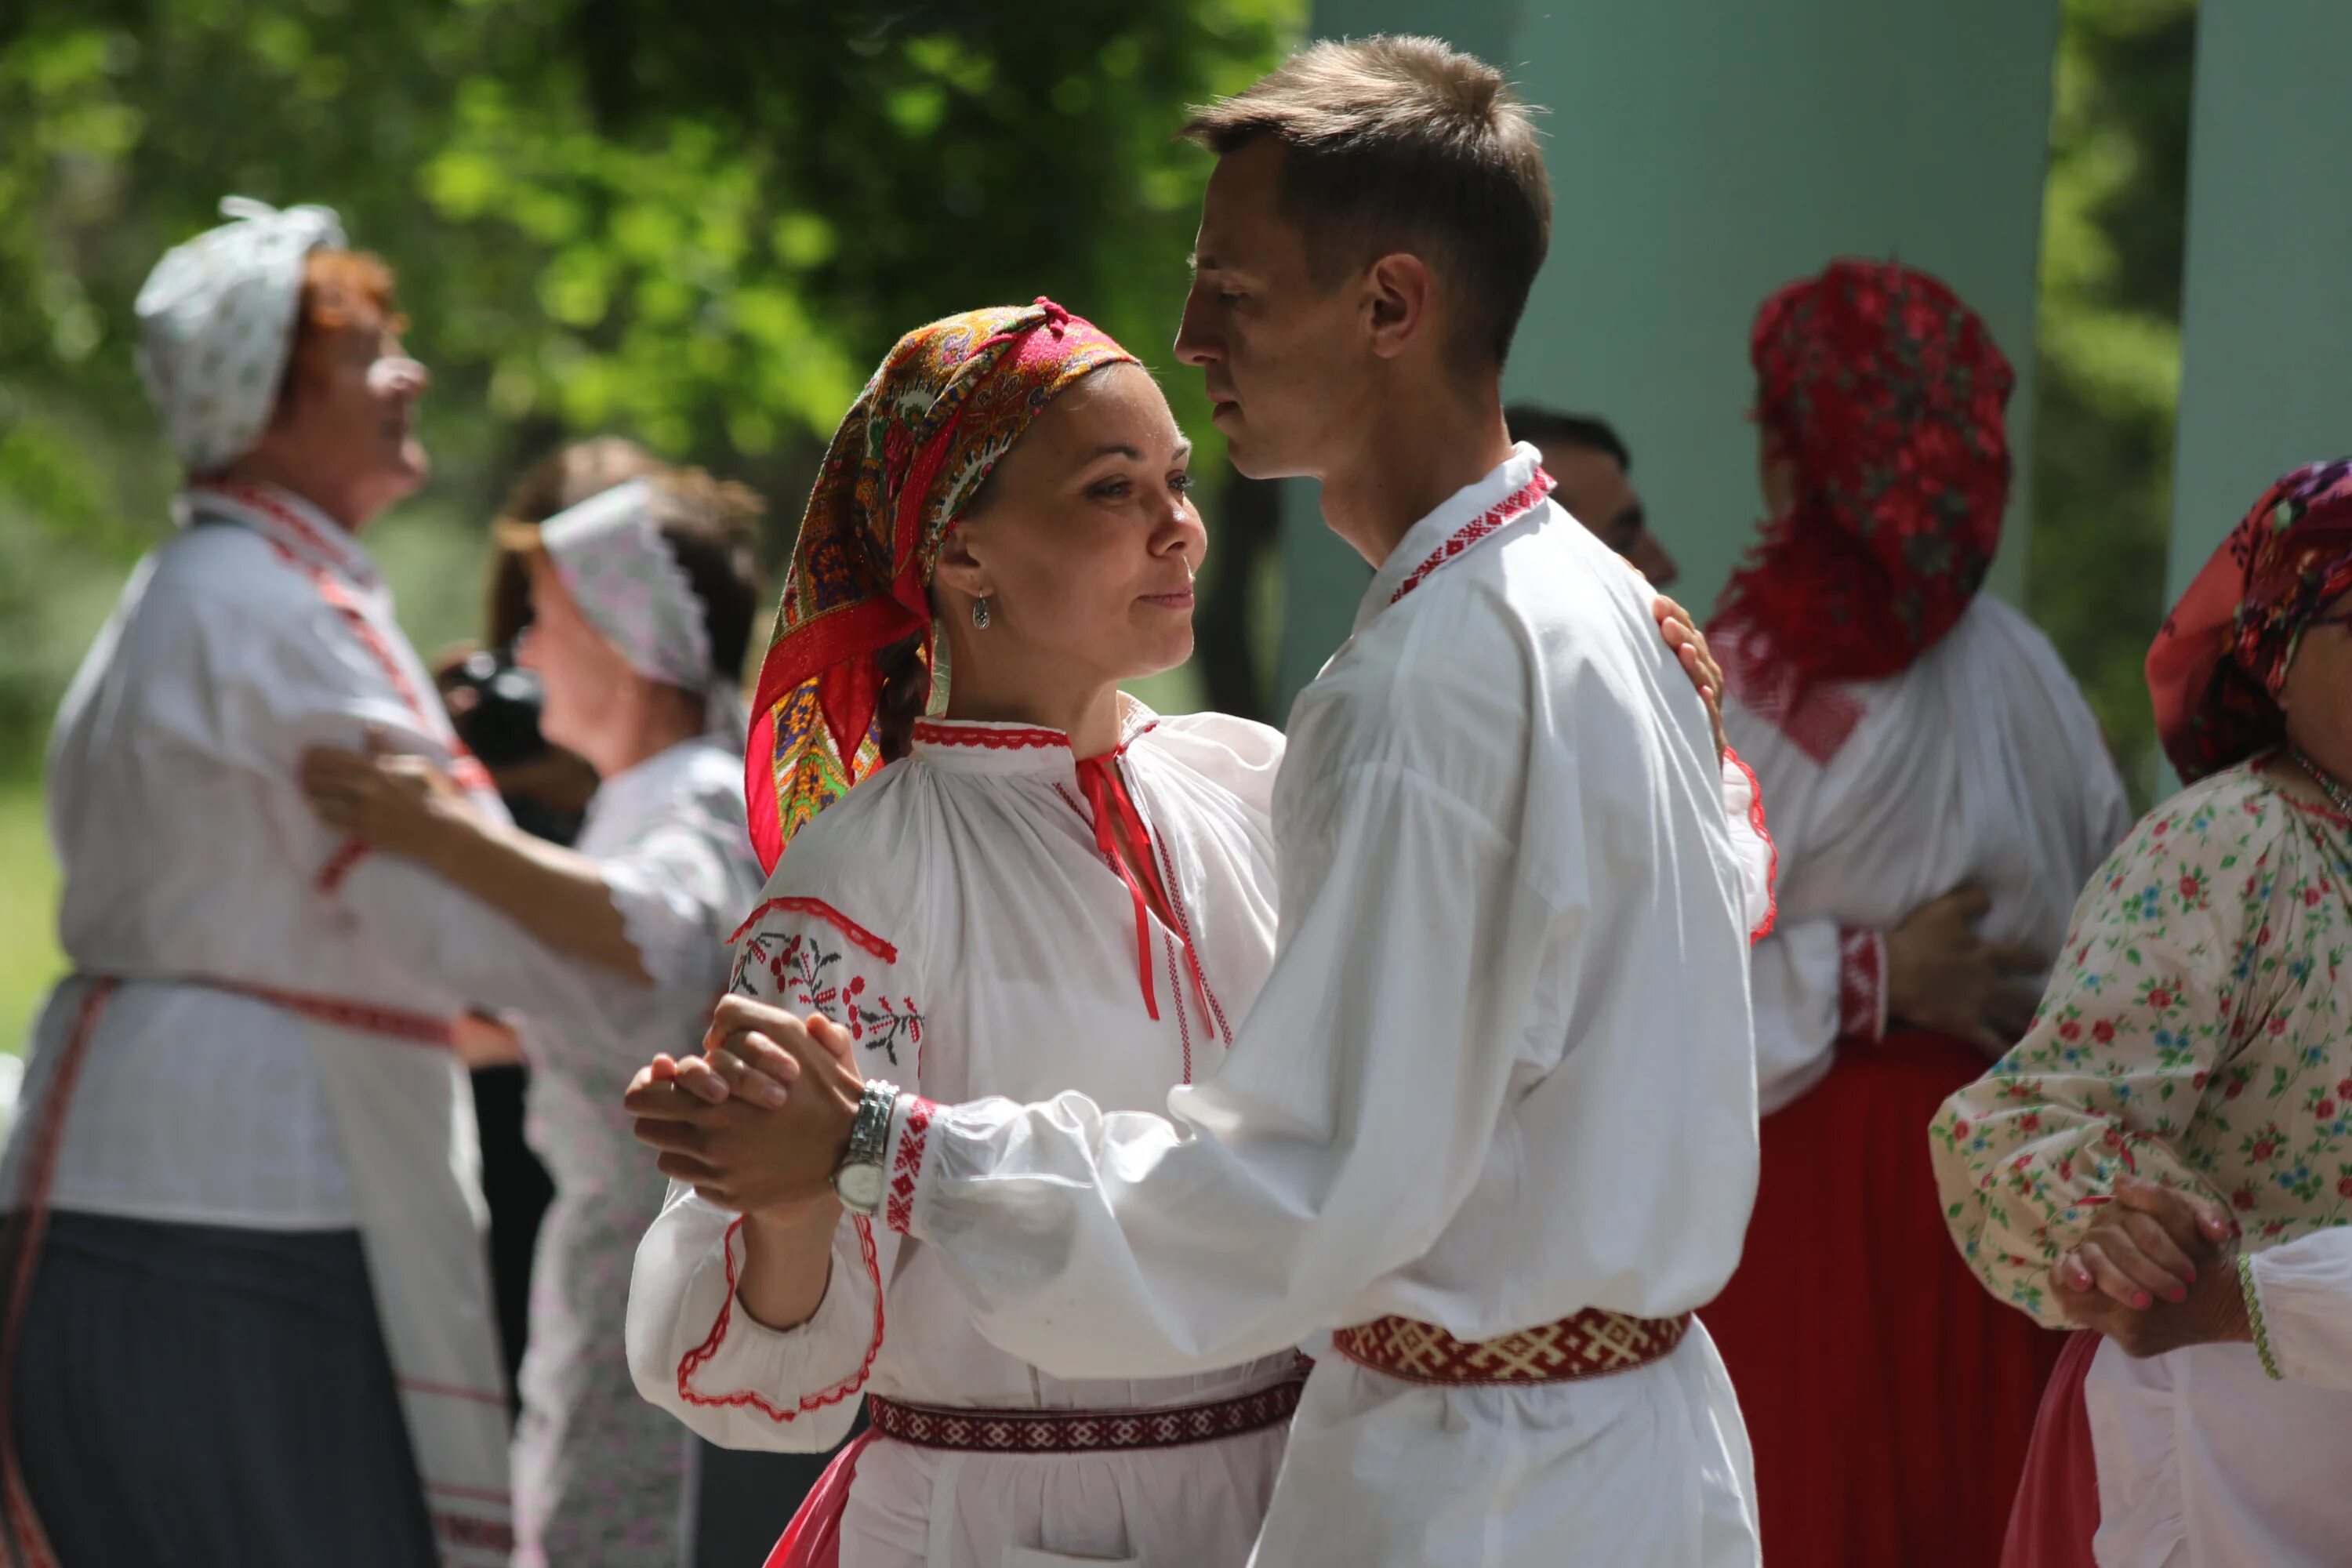 Белорусы в грузии